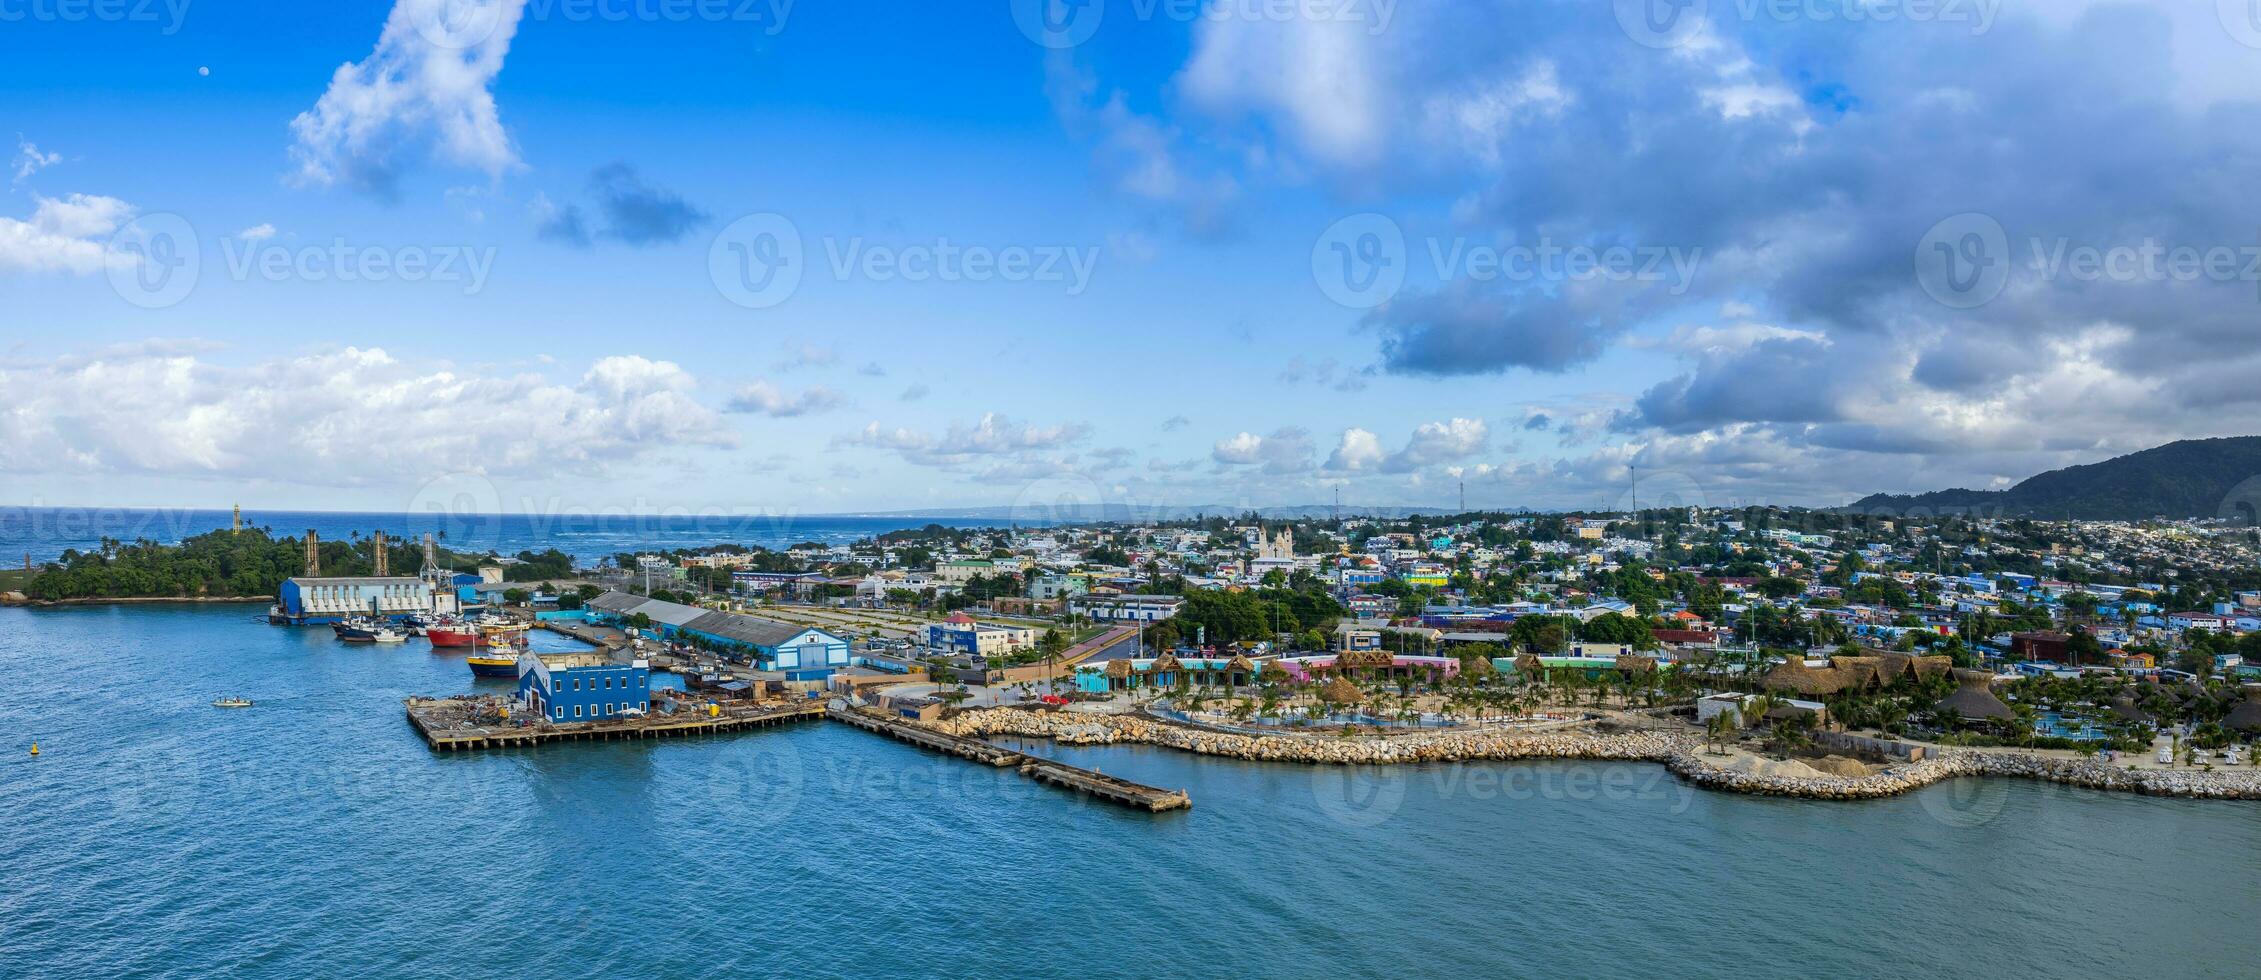 dominikanisch Republik, szenisch Strände und Resorts von puerto plata foto